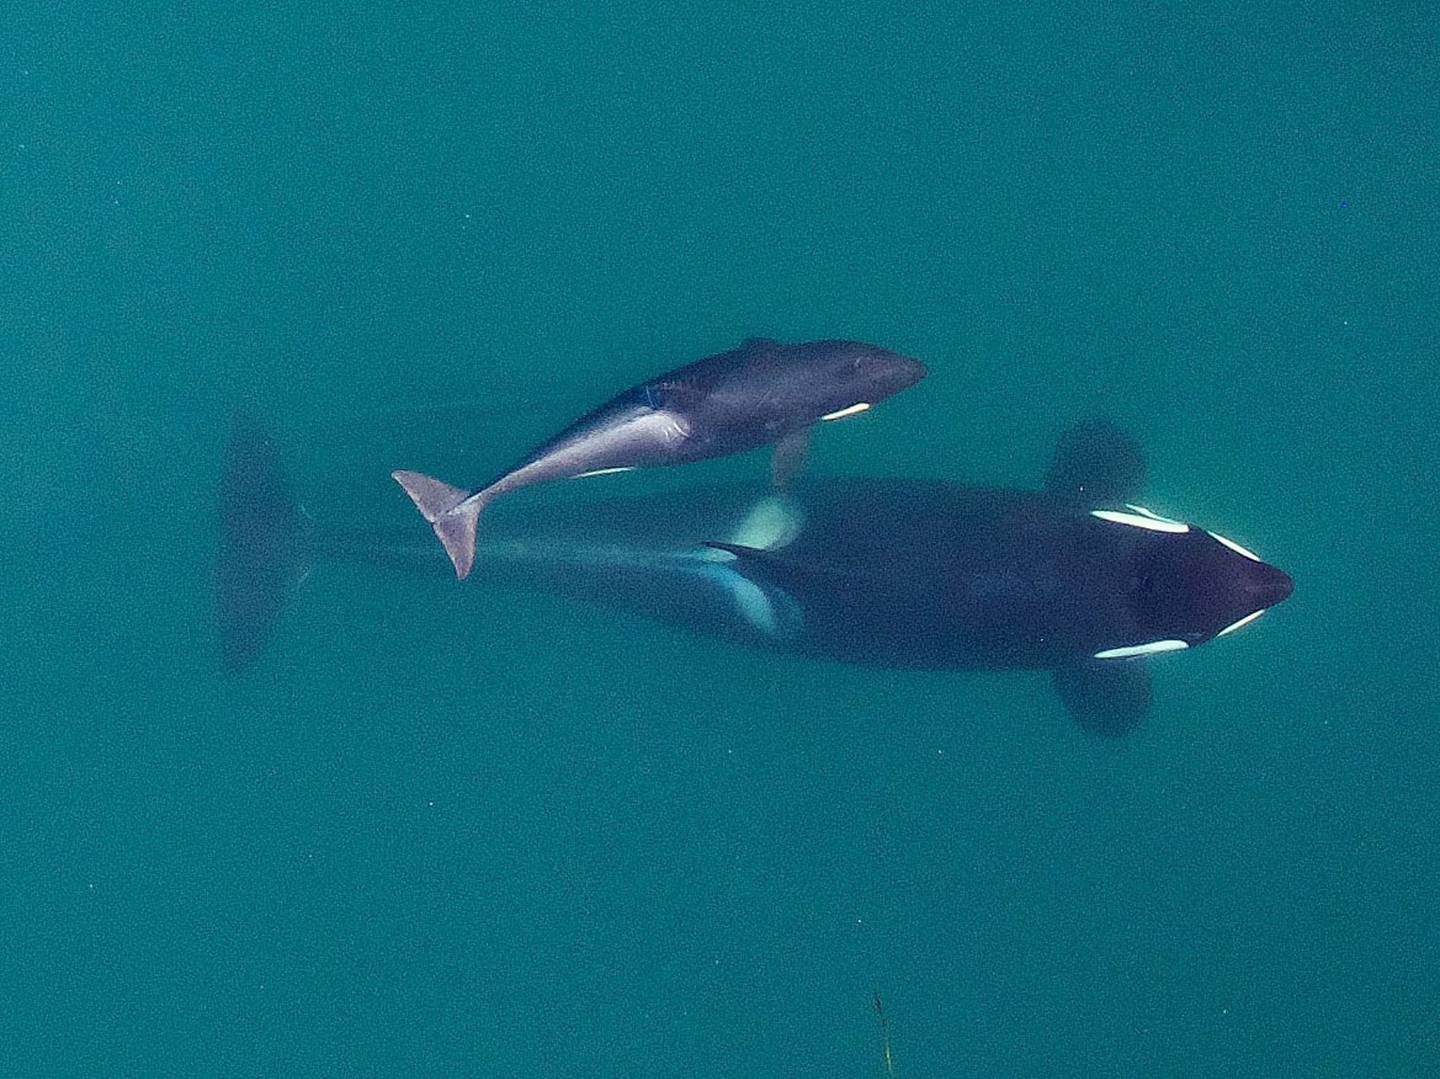 Puget Sound Orcas